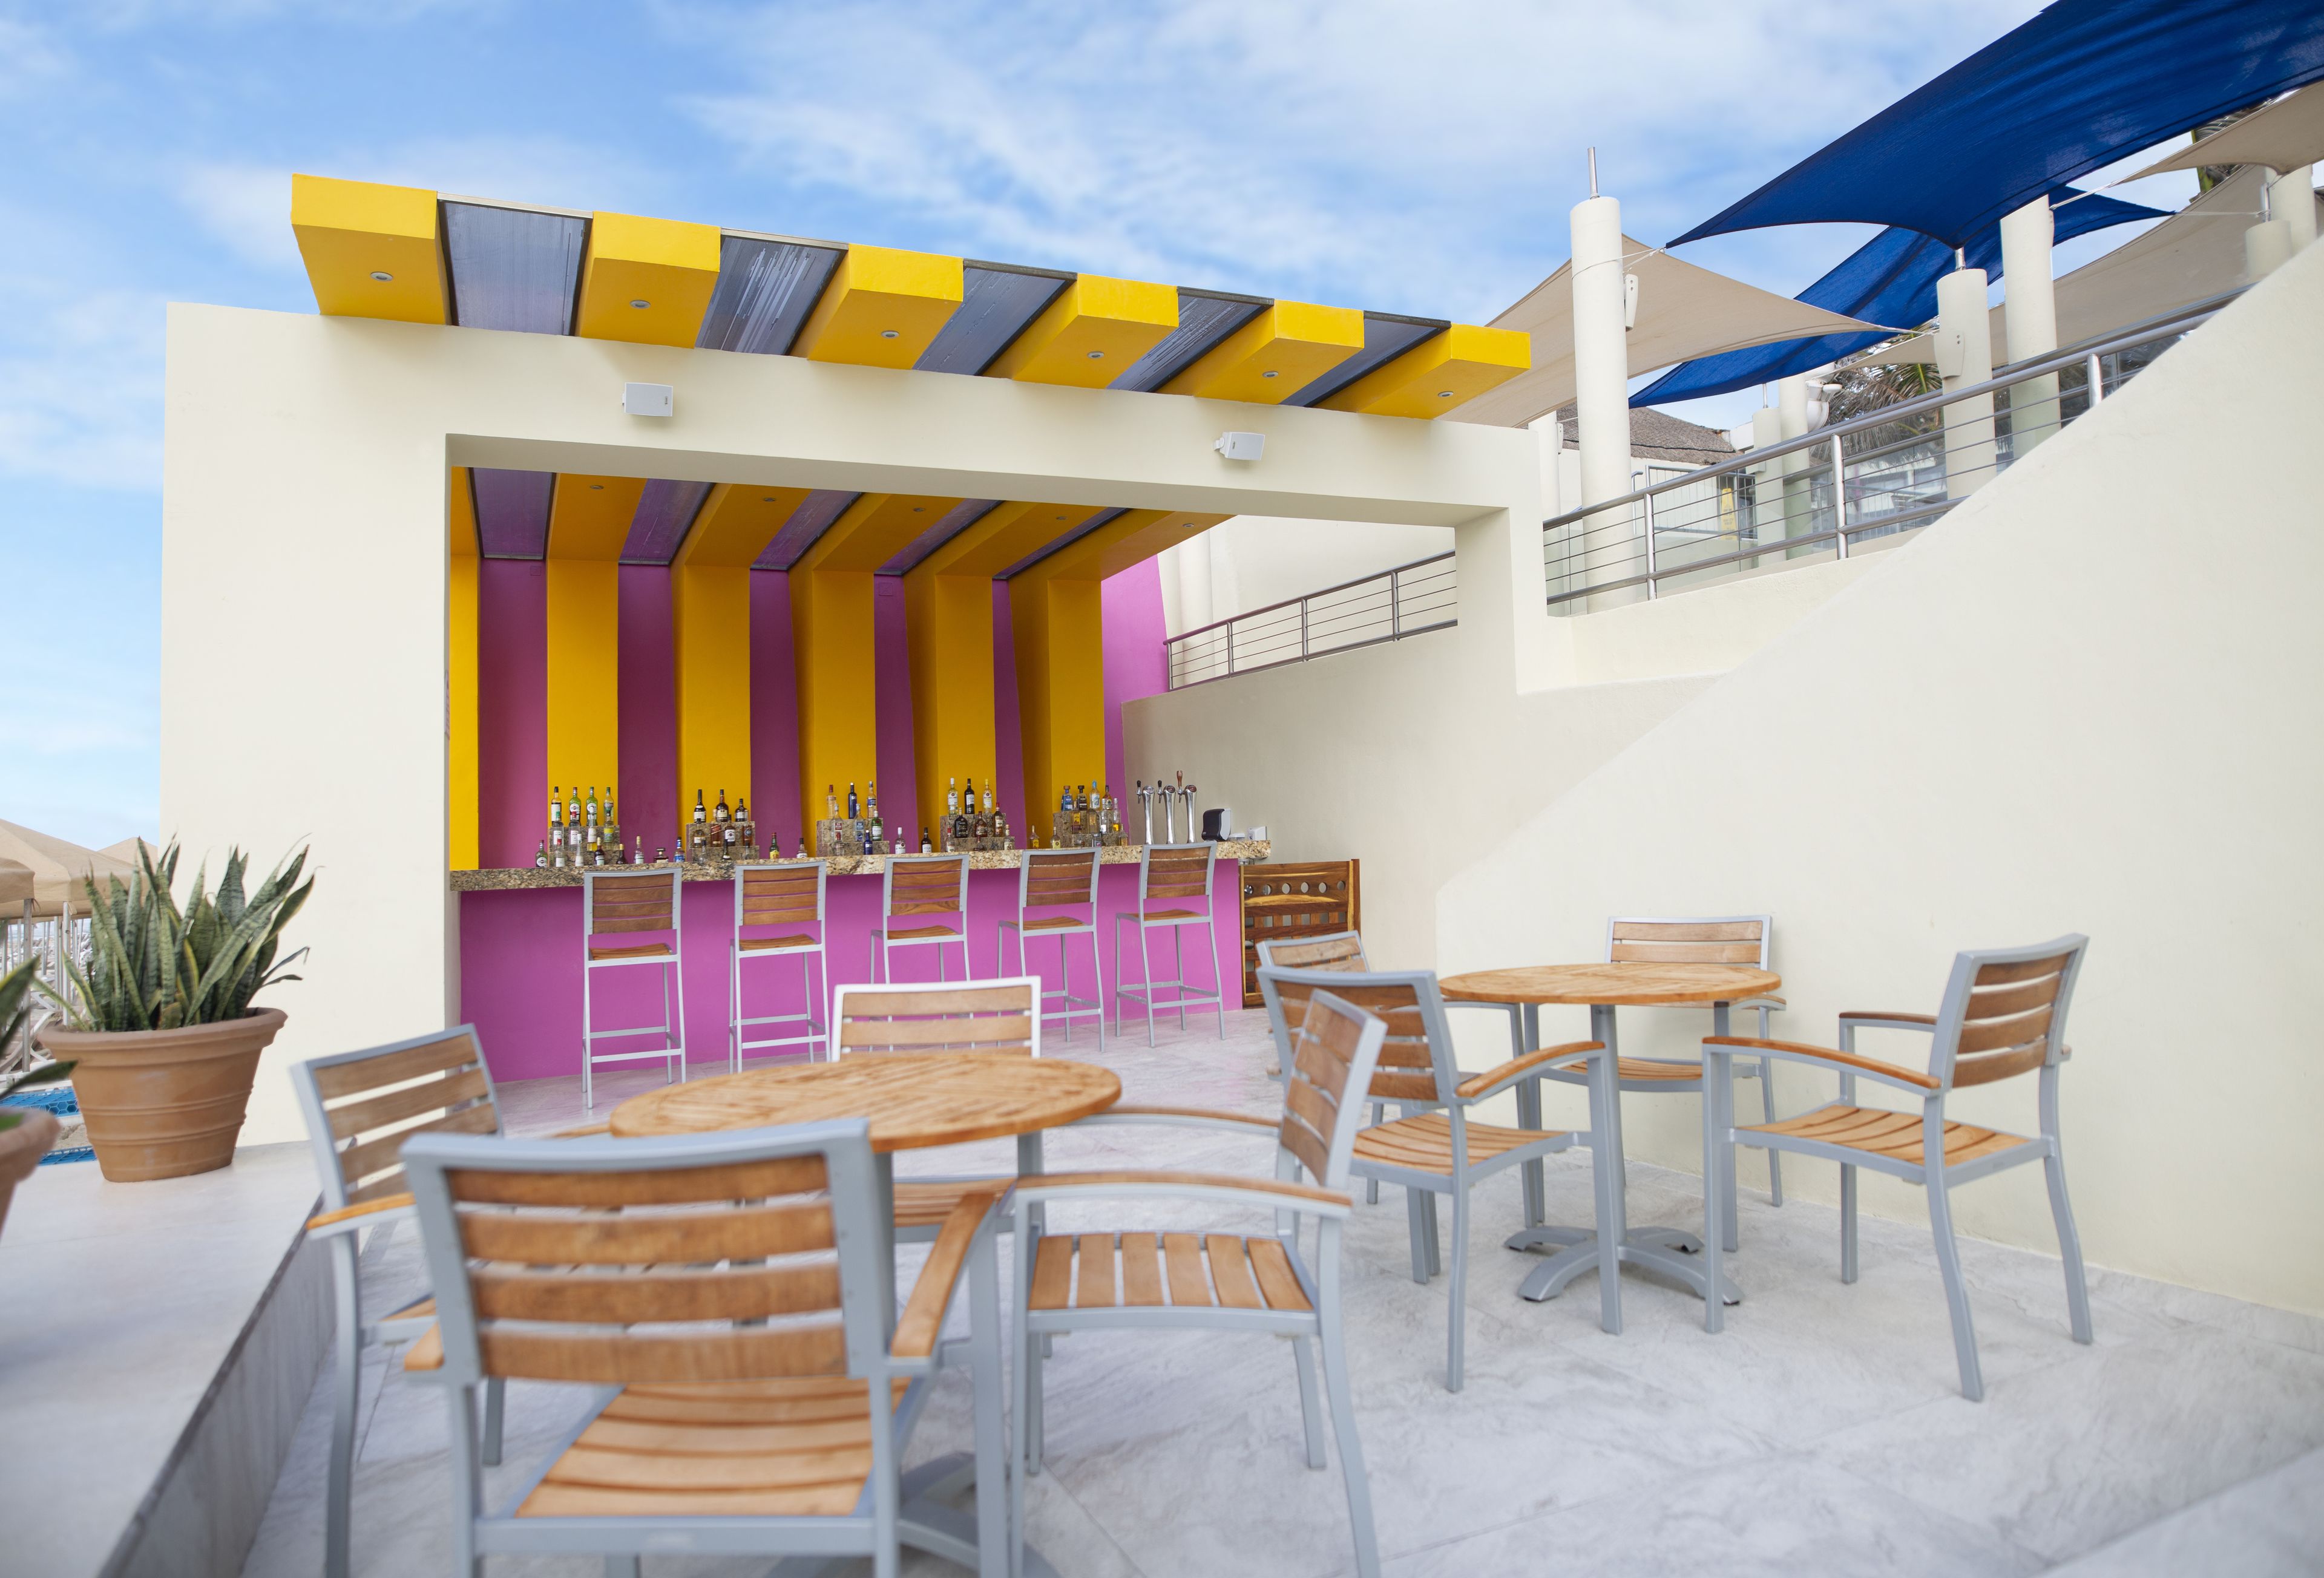 Crown Paradise Club Cancún